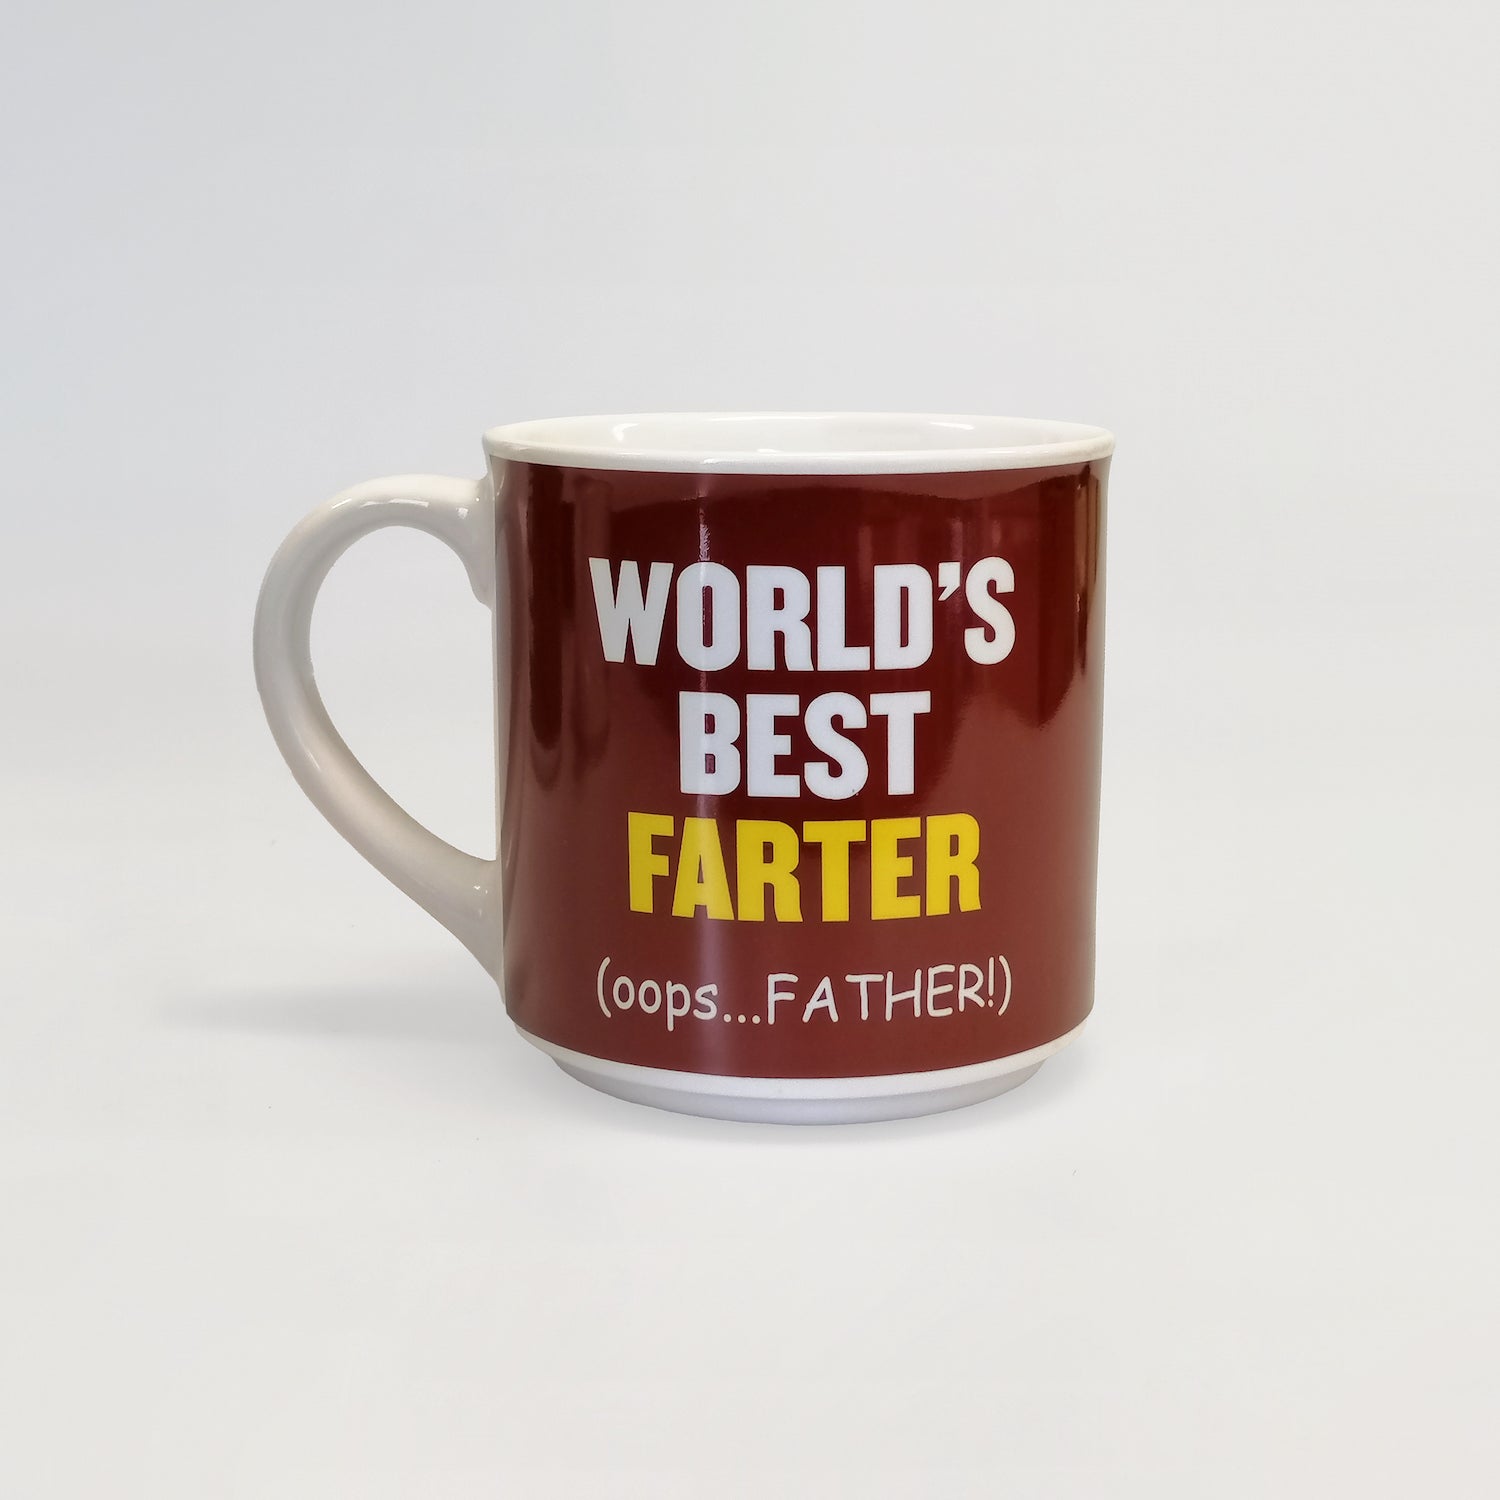 Worlds Best Farter" Mug